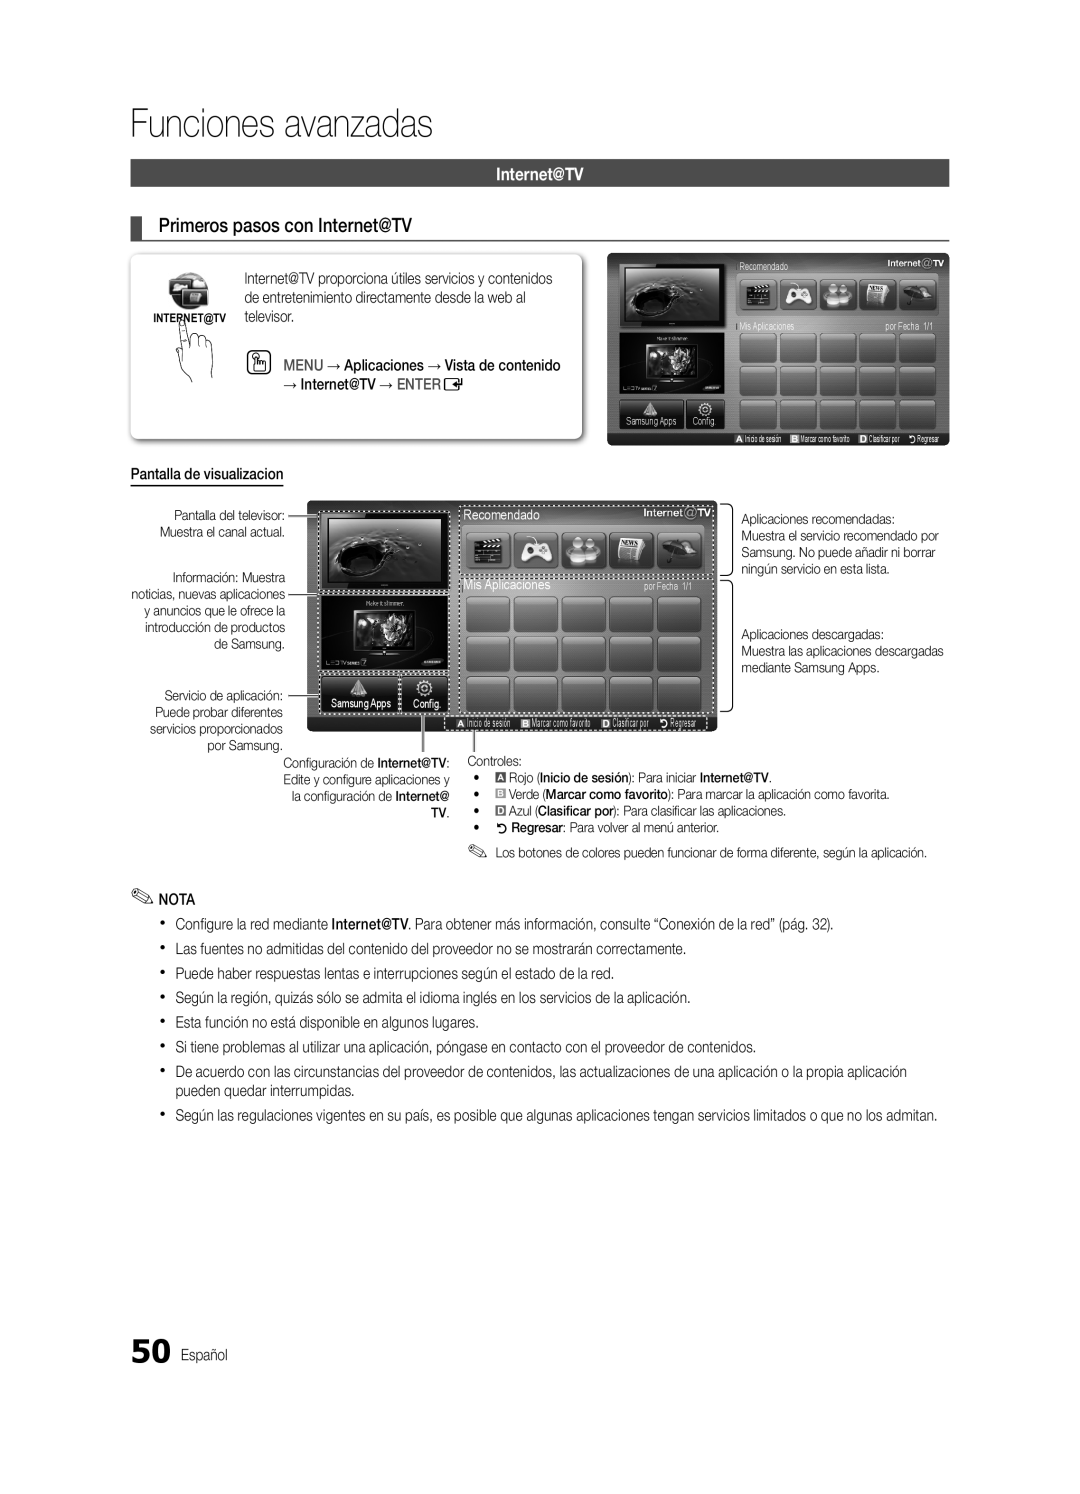 Samsung BN68-03088A-01, Series C9 user manual Primeros pasos con Internet@TV, Funciones avanzadas 